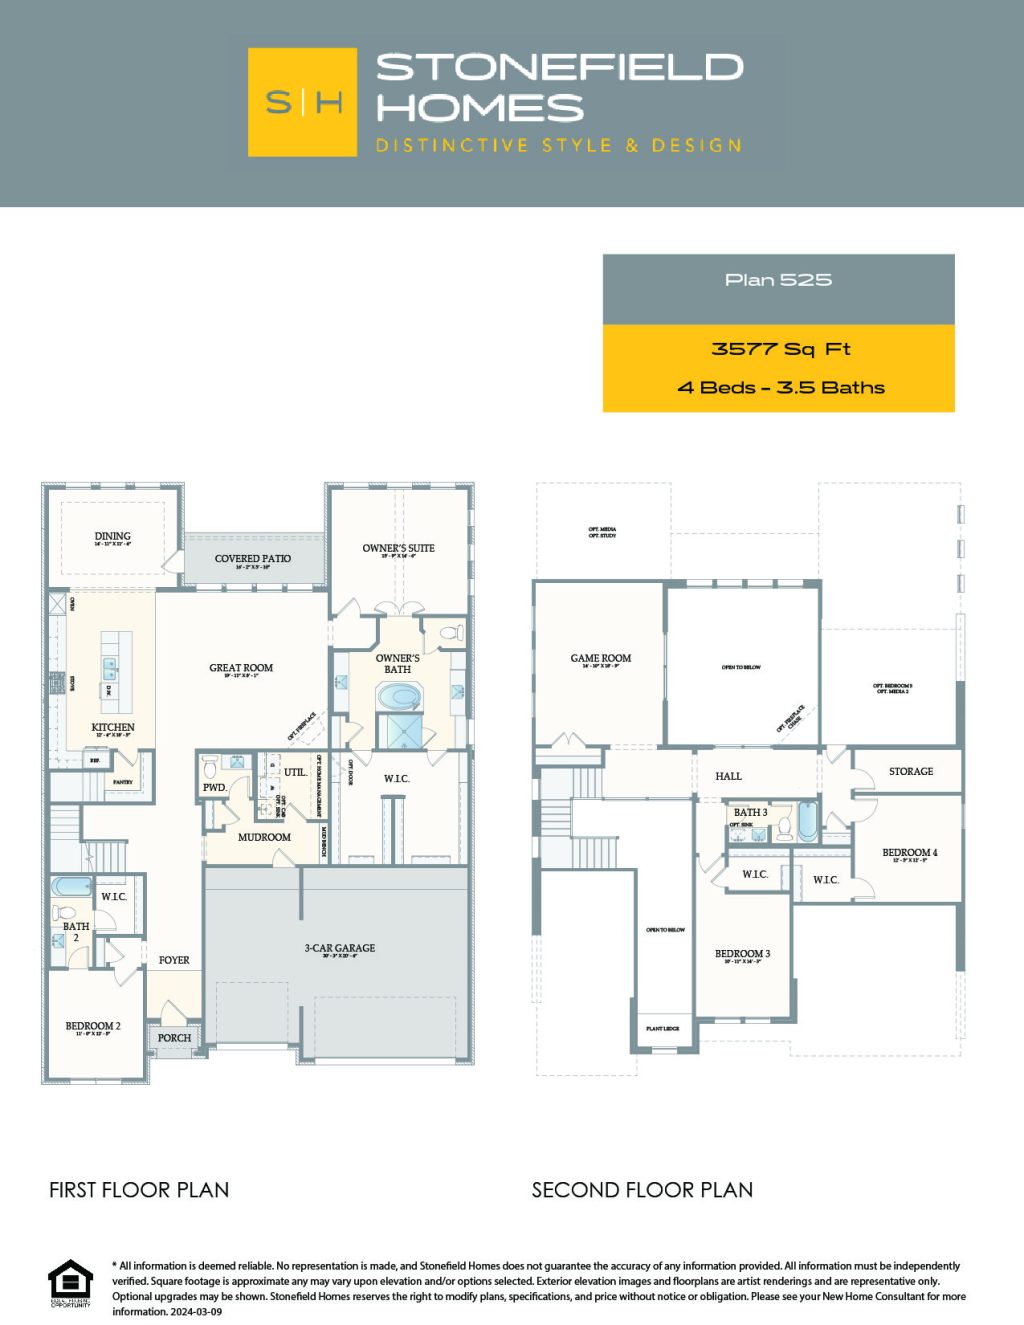 Samoa Floor Plan - 2 Story House Plans in Houston TX